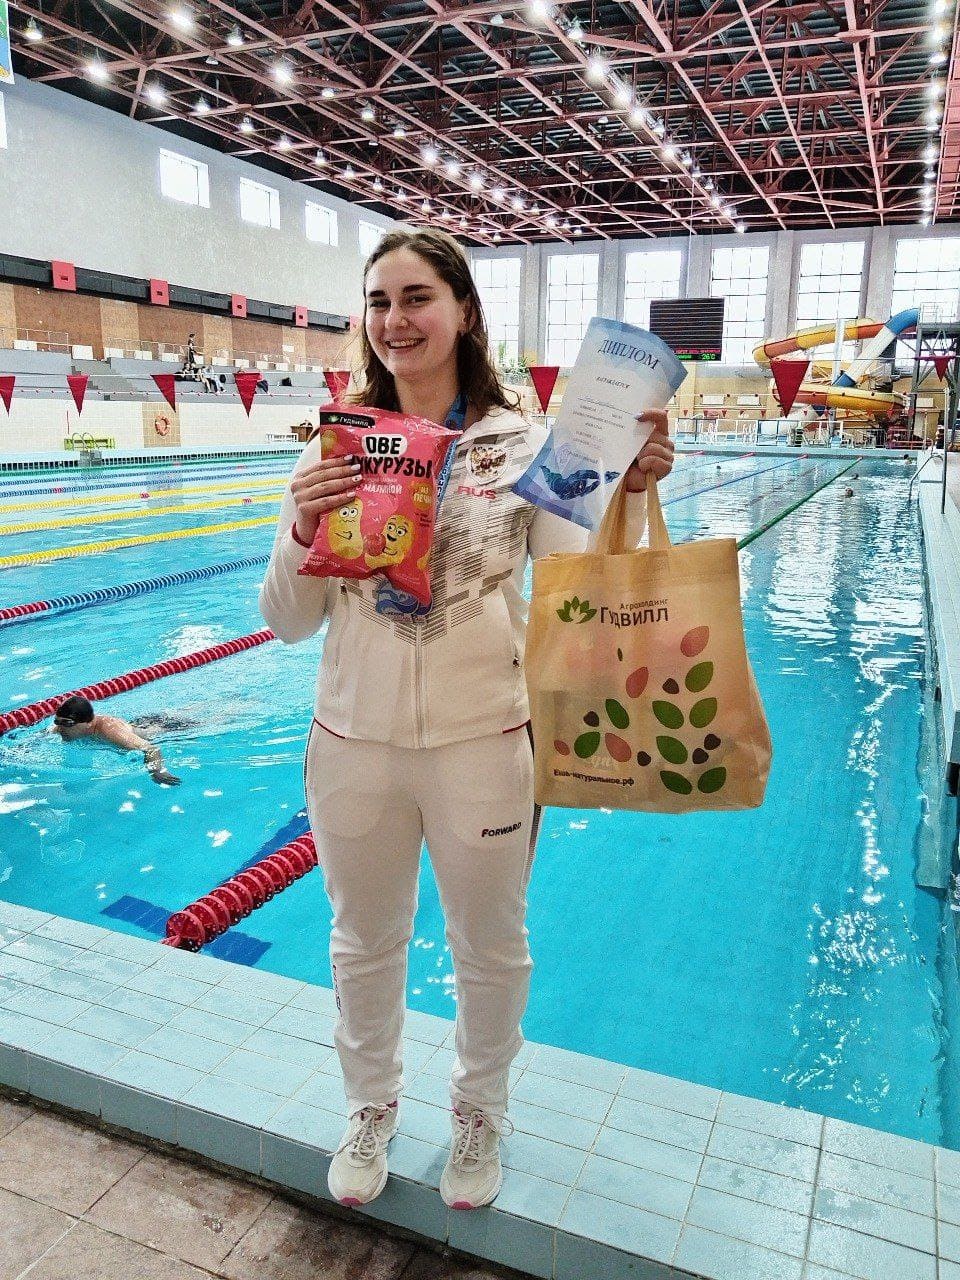 Агрохолдинг Гудвилл стал спонсором на краевых соревнованиях по плаванию «Резерв Алтая», которые прошли с 1 по 3 февраля в СК «Заря».